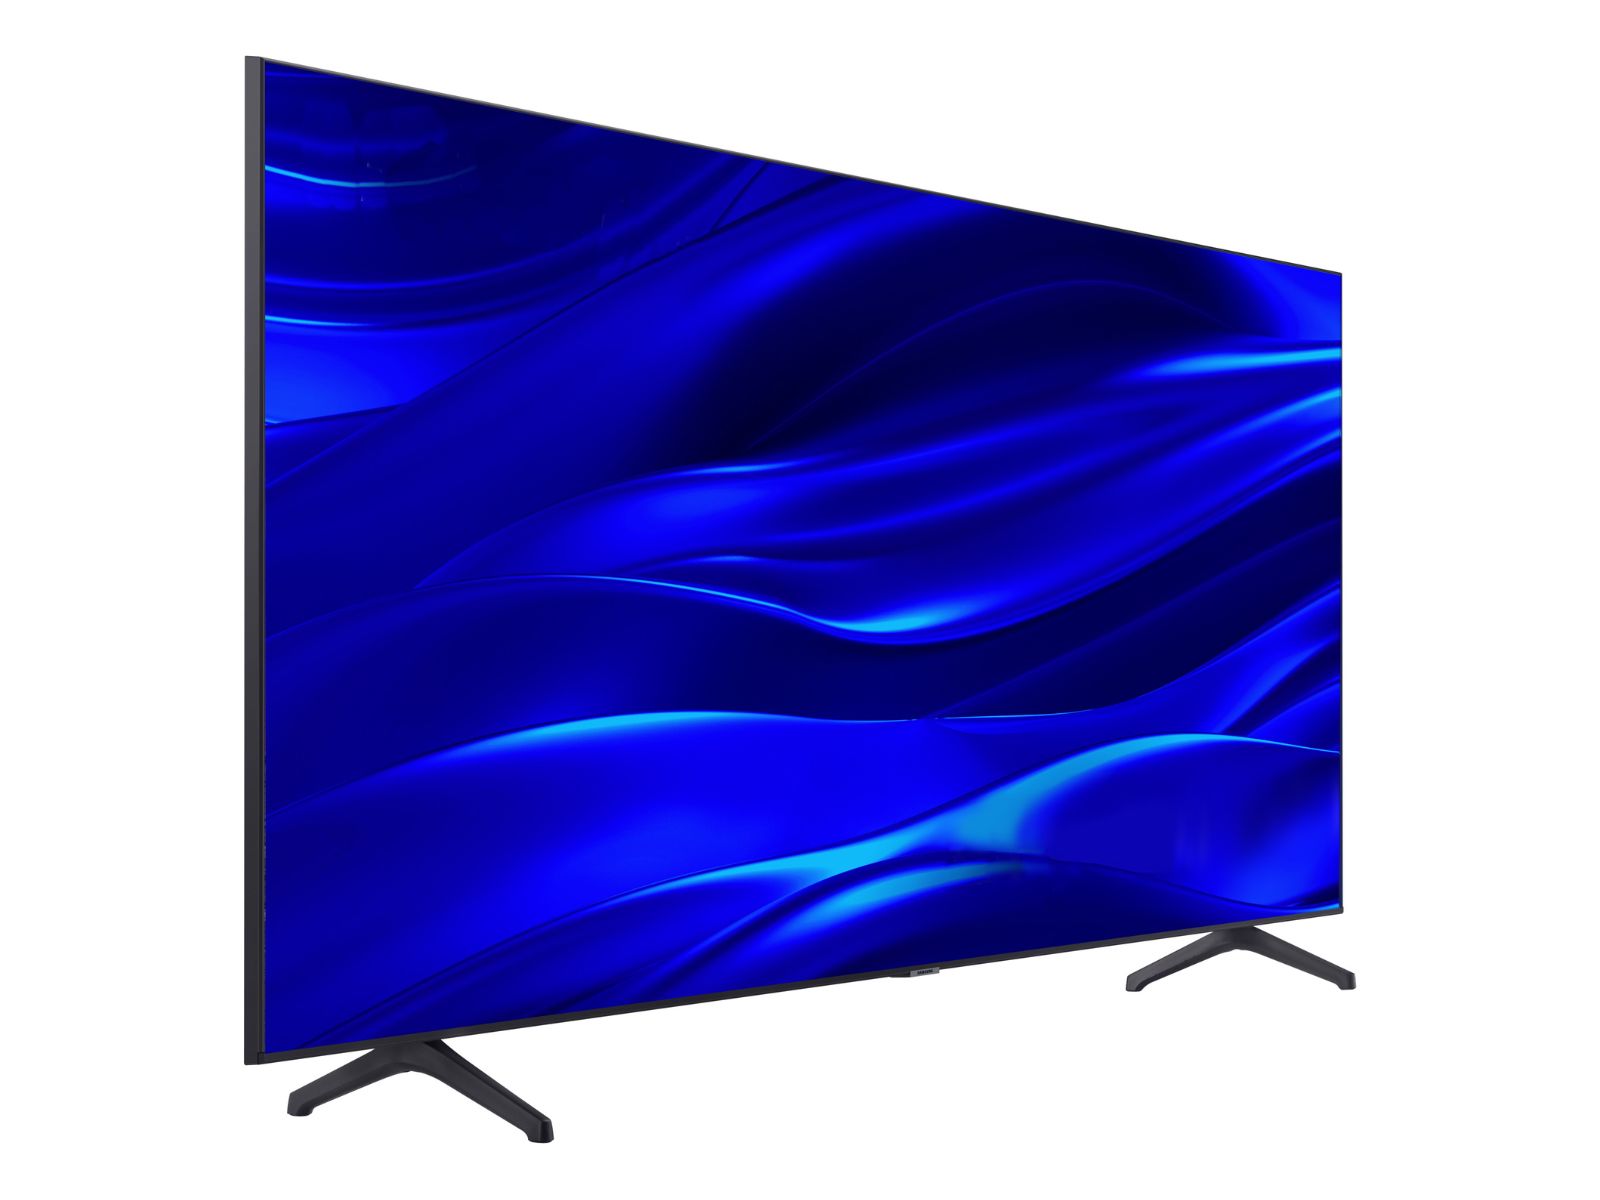 Samsung UN43CU8000 CU8000 4K Smart LED TV with HDR (43) at Crutchfield